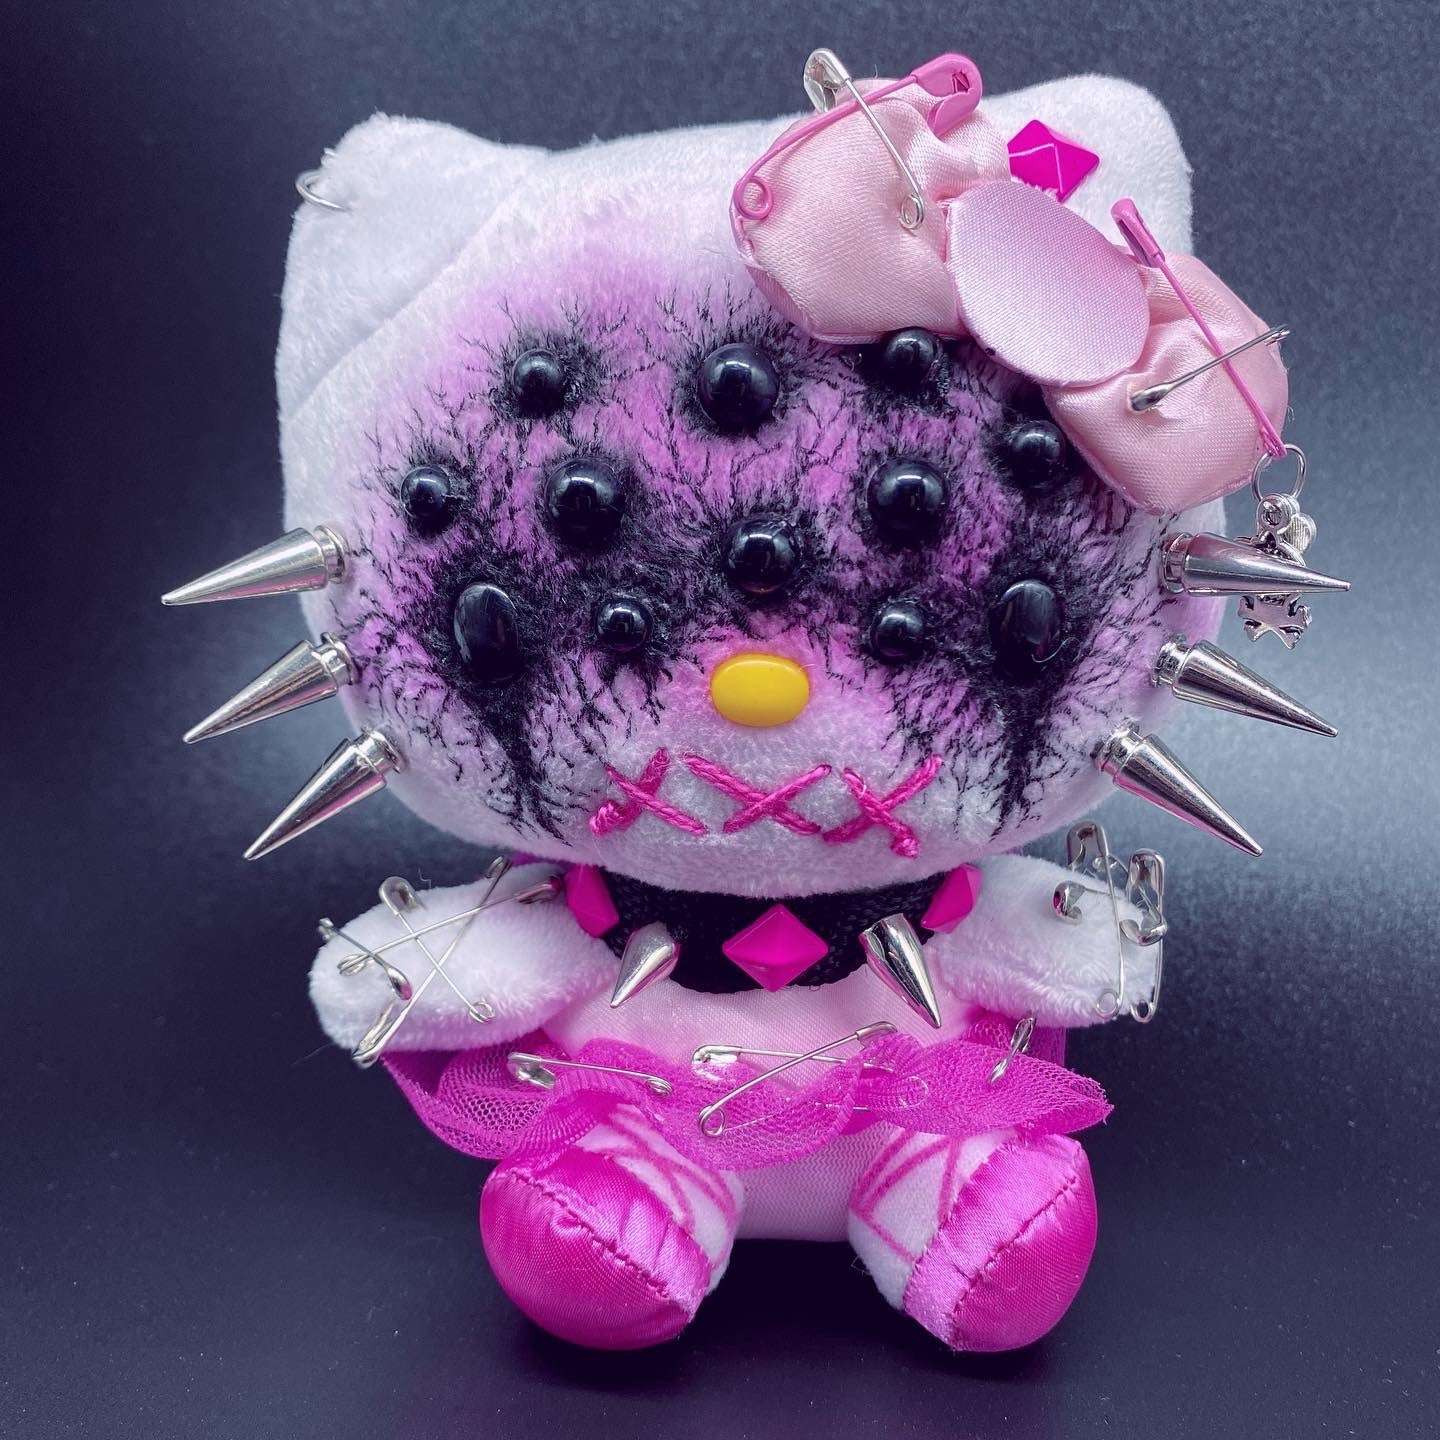 Creepy Horror Hello Kitty Doll Plush